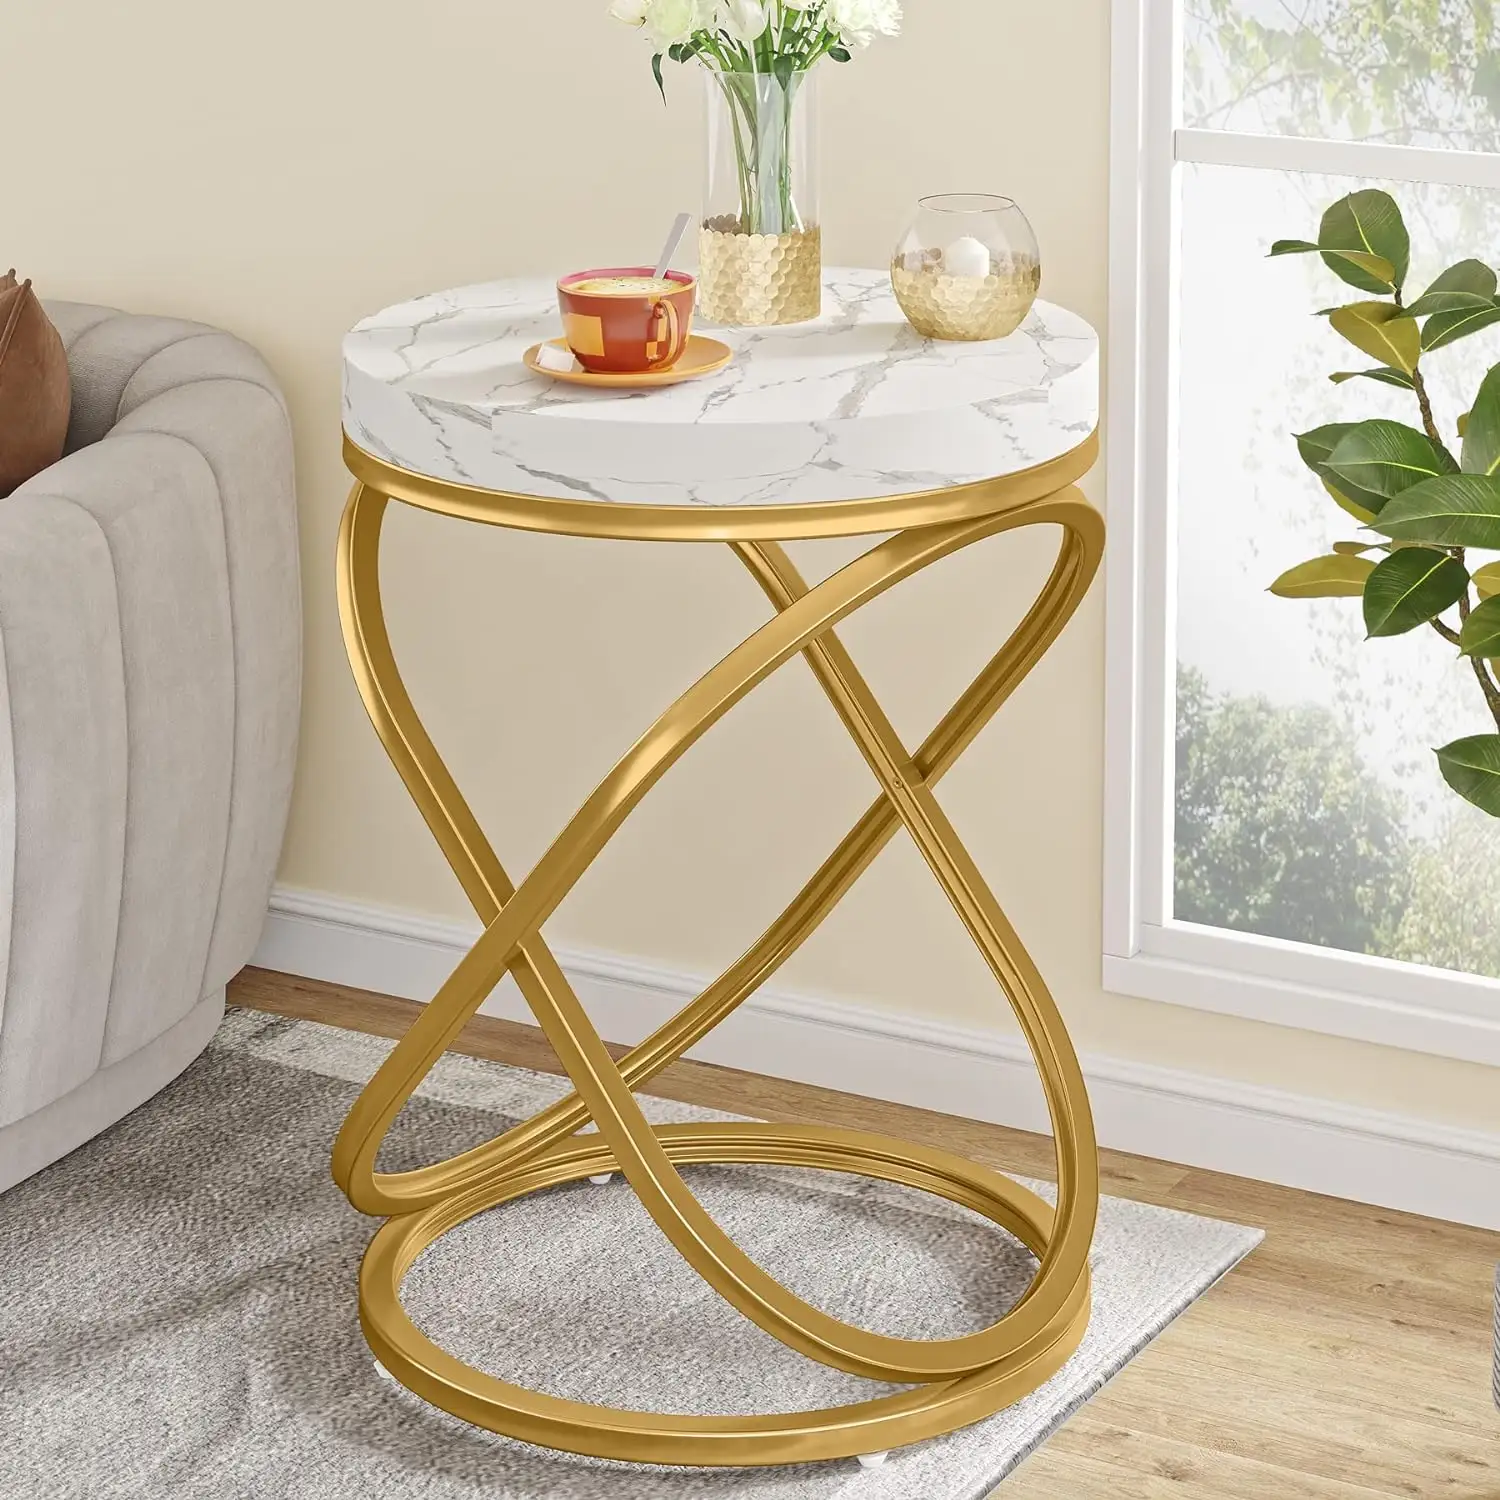 Tribe signs Moderne Luxus-Wohnzimmer möbel aus Holz Weiß und Gold Kunst marmor Nachttisch Runder Couch tisch